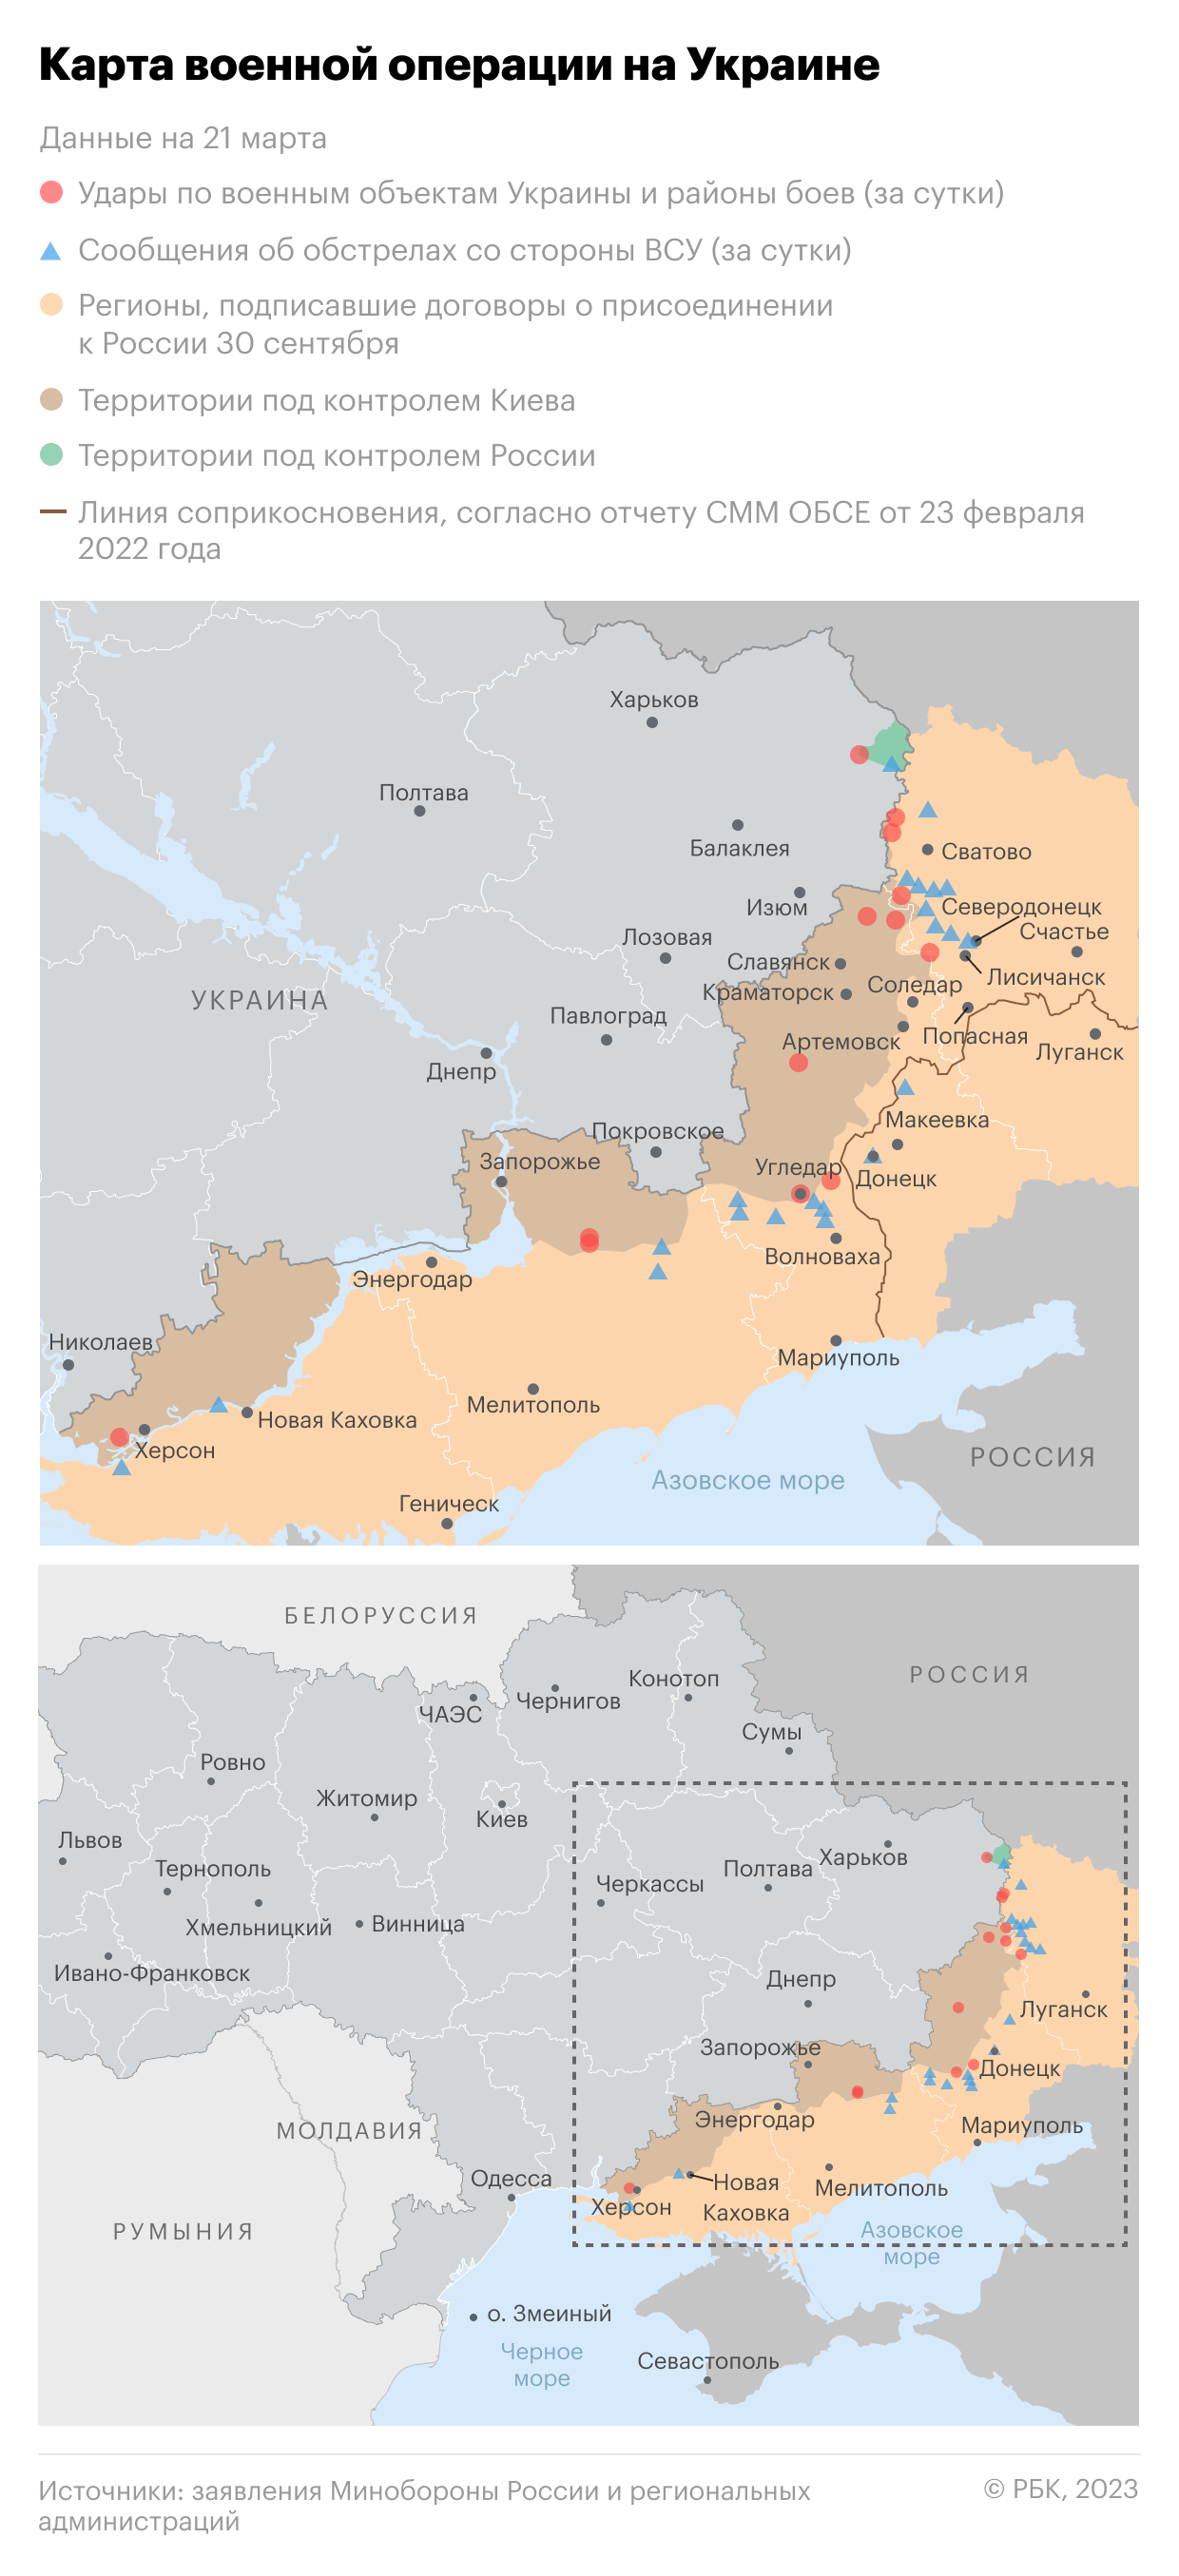 Власти двух городов попросили жителей покинуть Донецкую область